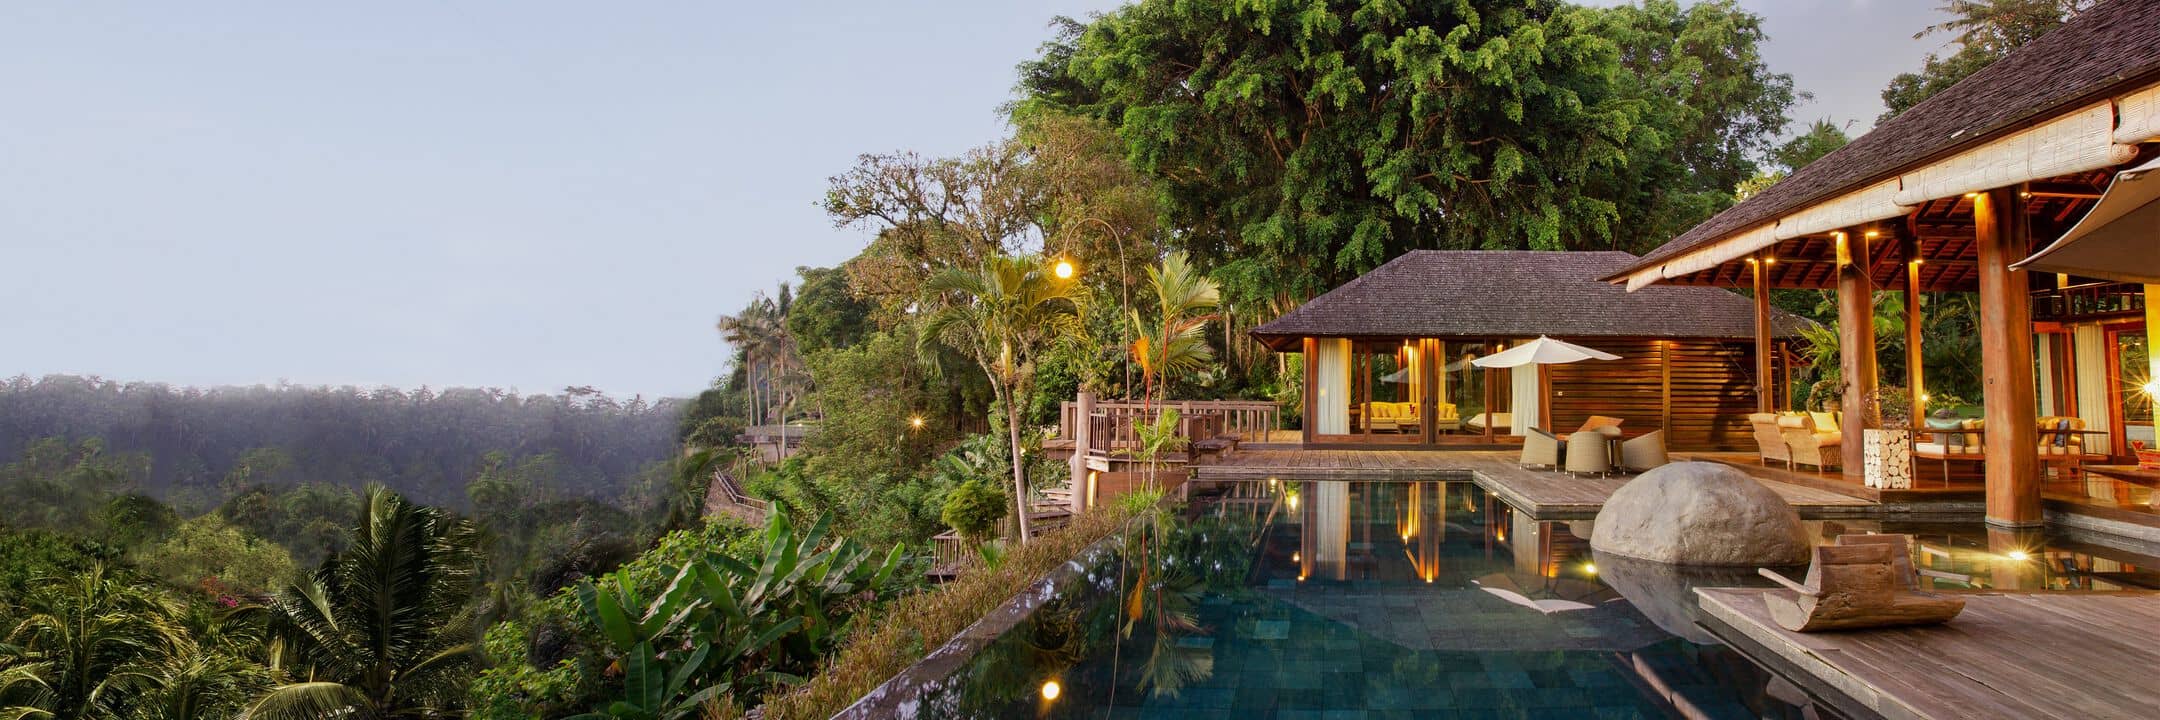 Bali Luxury Villas  Vacation Rentals Airbnb  Luxe 